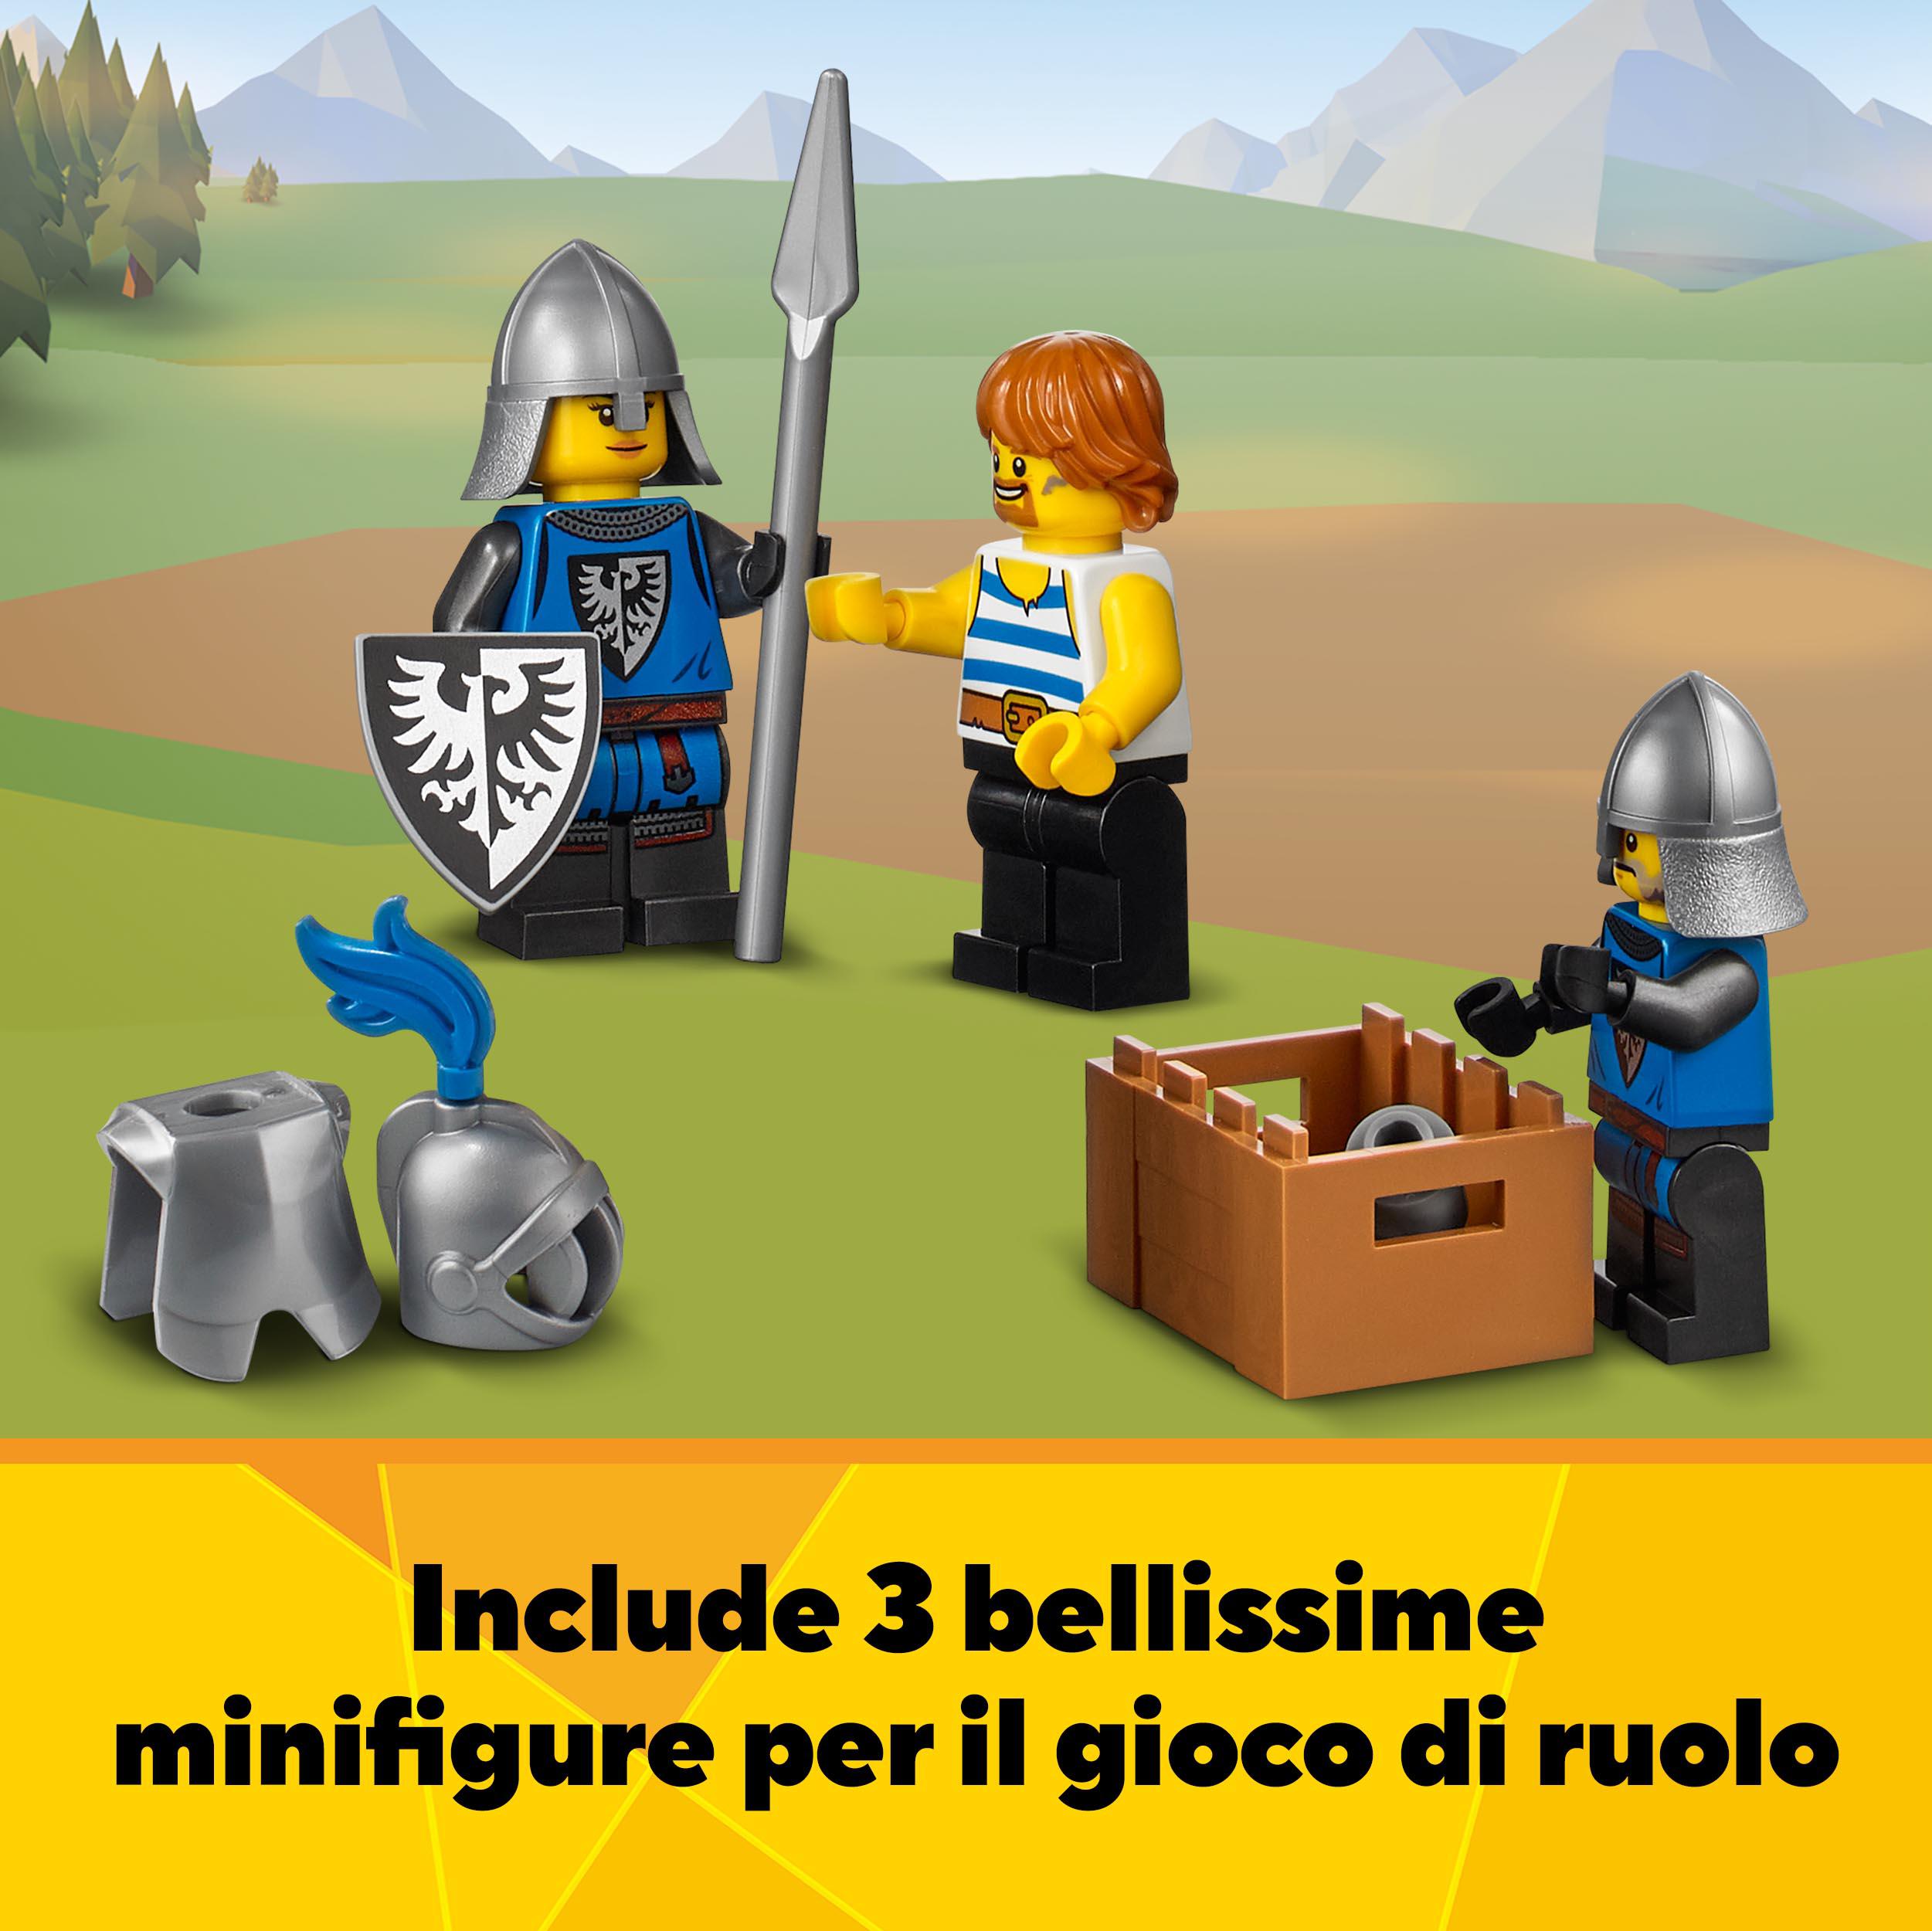 Lego creator 3 in 1 castello medievale, torre e mercato con catapulta e drago giocattolo, include 3 minifigure, 31120 - LEGO CREATOR, Lego